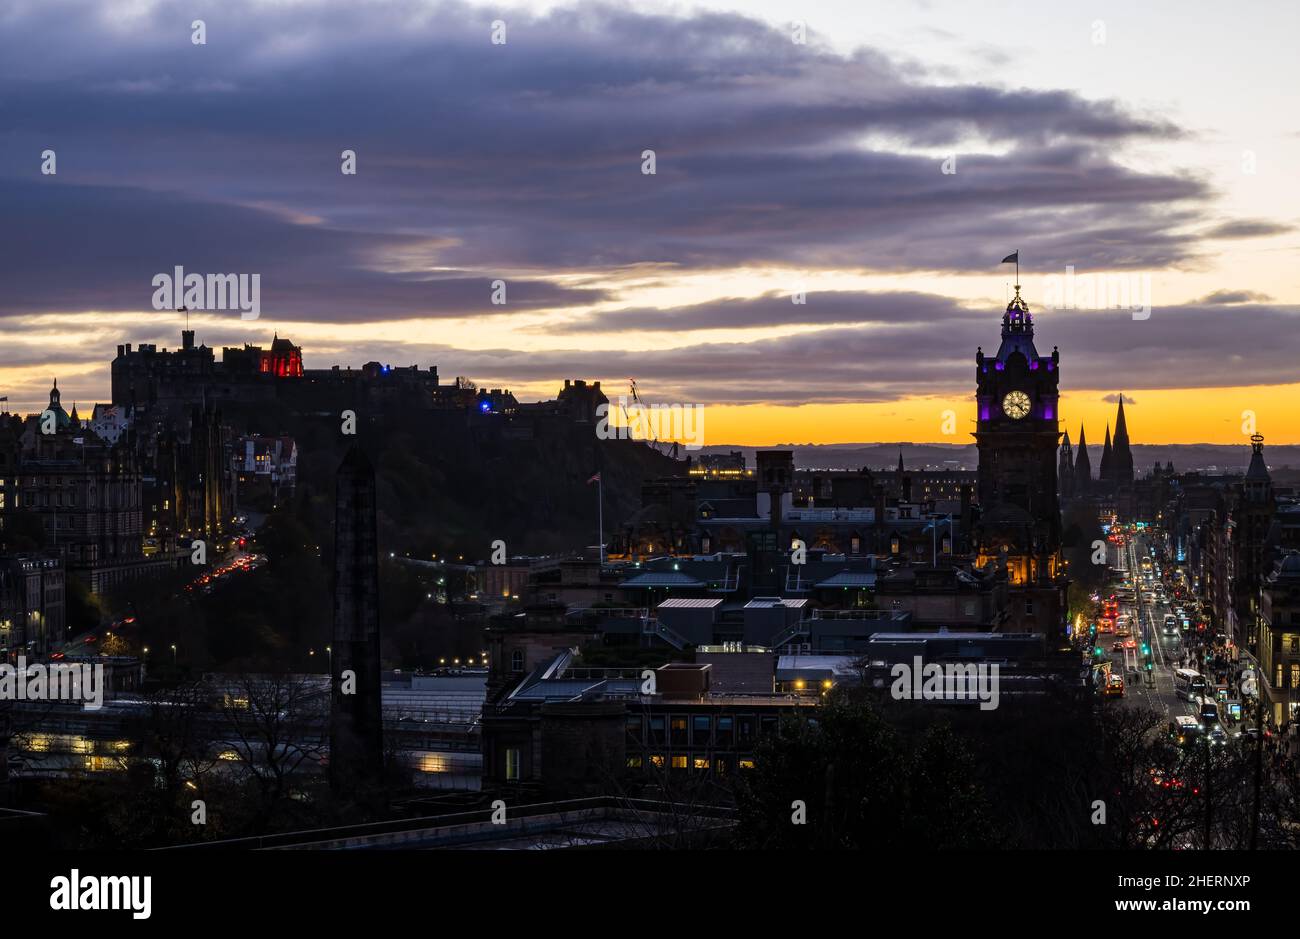 La torre dell'orologio Balmoral e Princes Street si illuminarono di notte con un tramonto colorato, Edimburgo, Scozia, Regno Unito Foto Stock